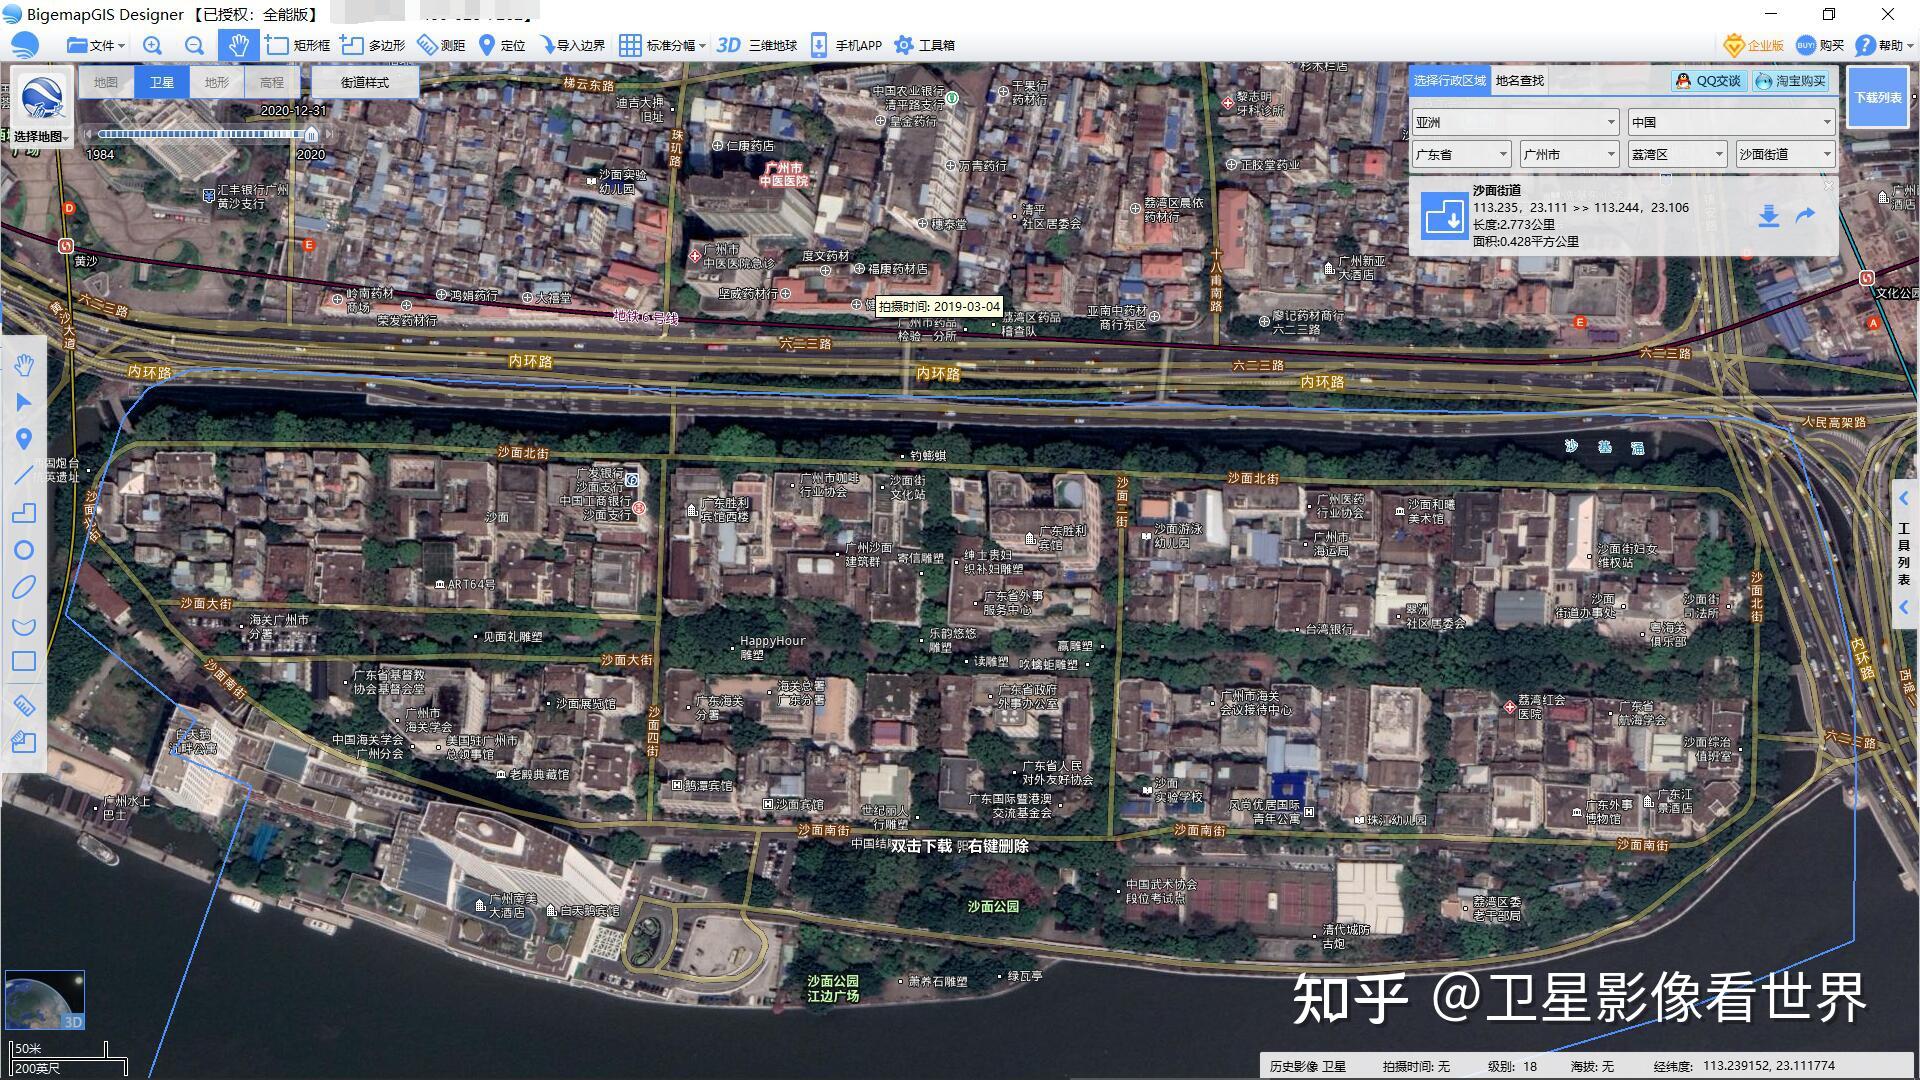 三,广州▲上海2000年和2020年的卫星影像(来源:bigemap大地图)以下